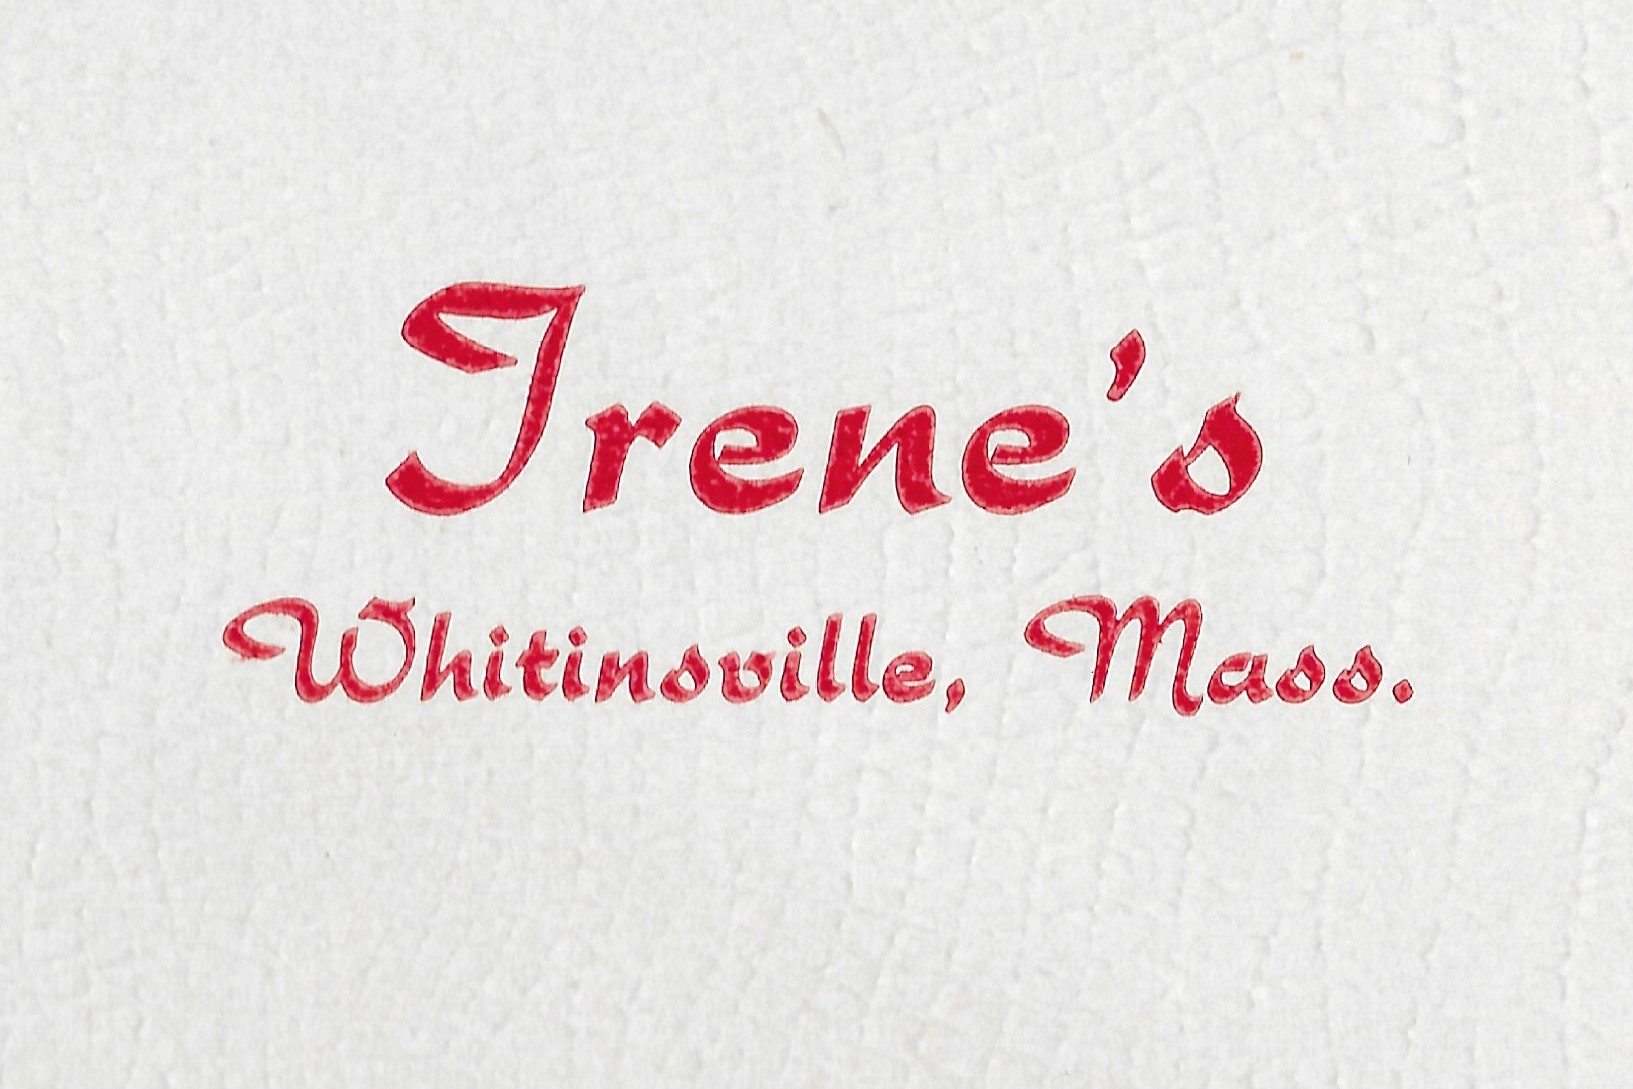 Irene Children Shop Logo.jpg